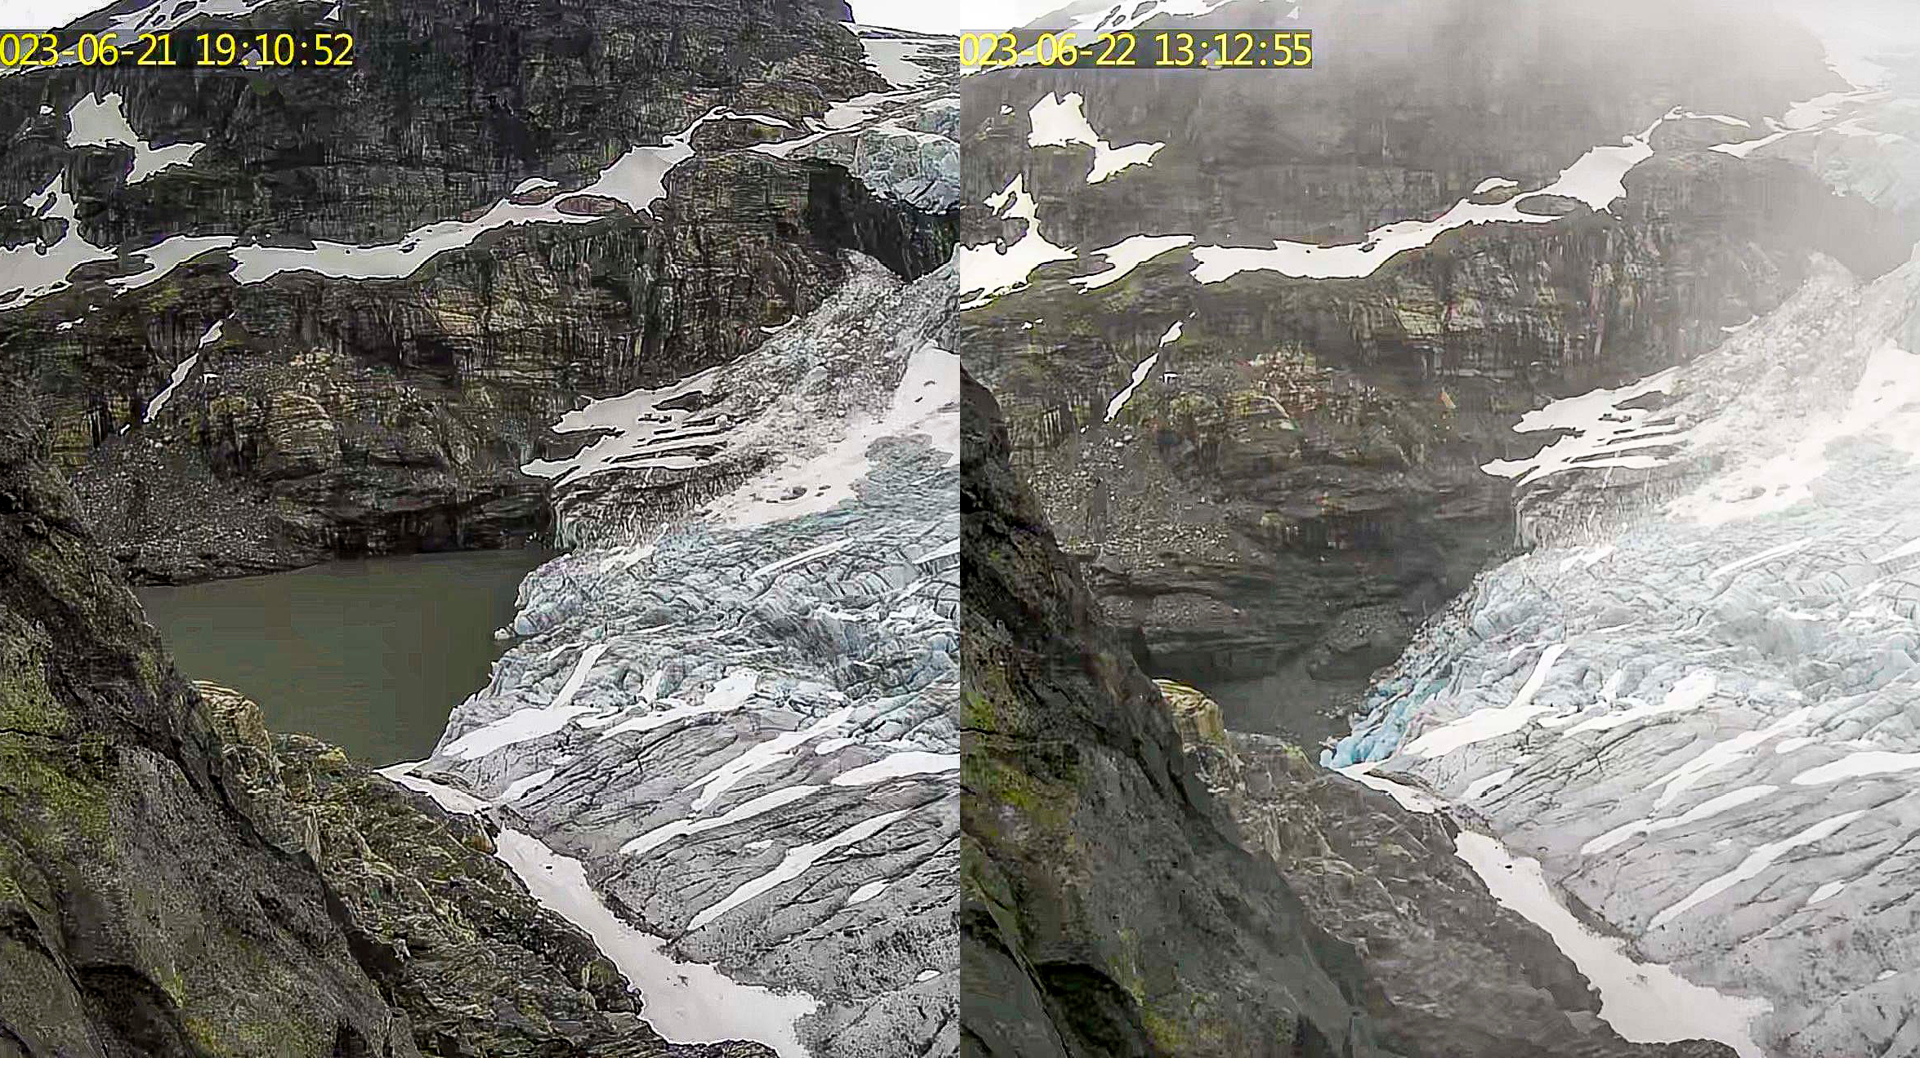 Webkamera bilde av innsjø ved isbre